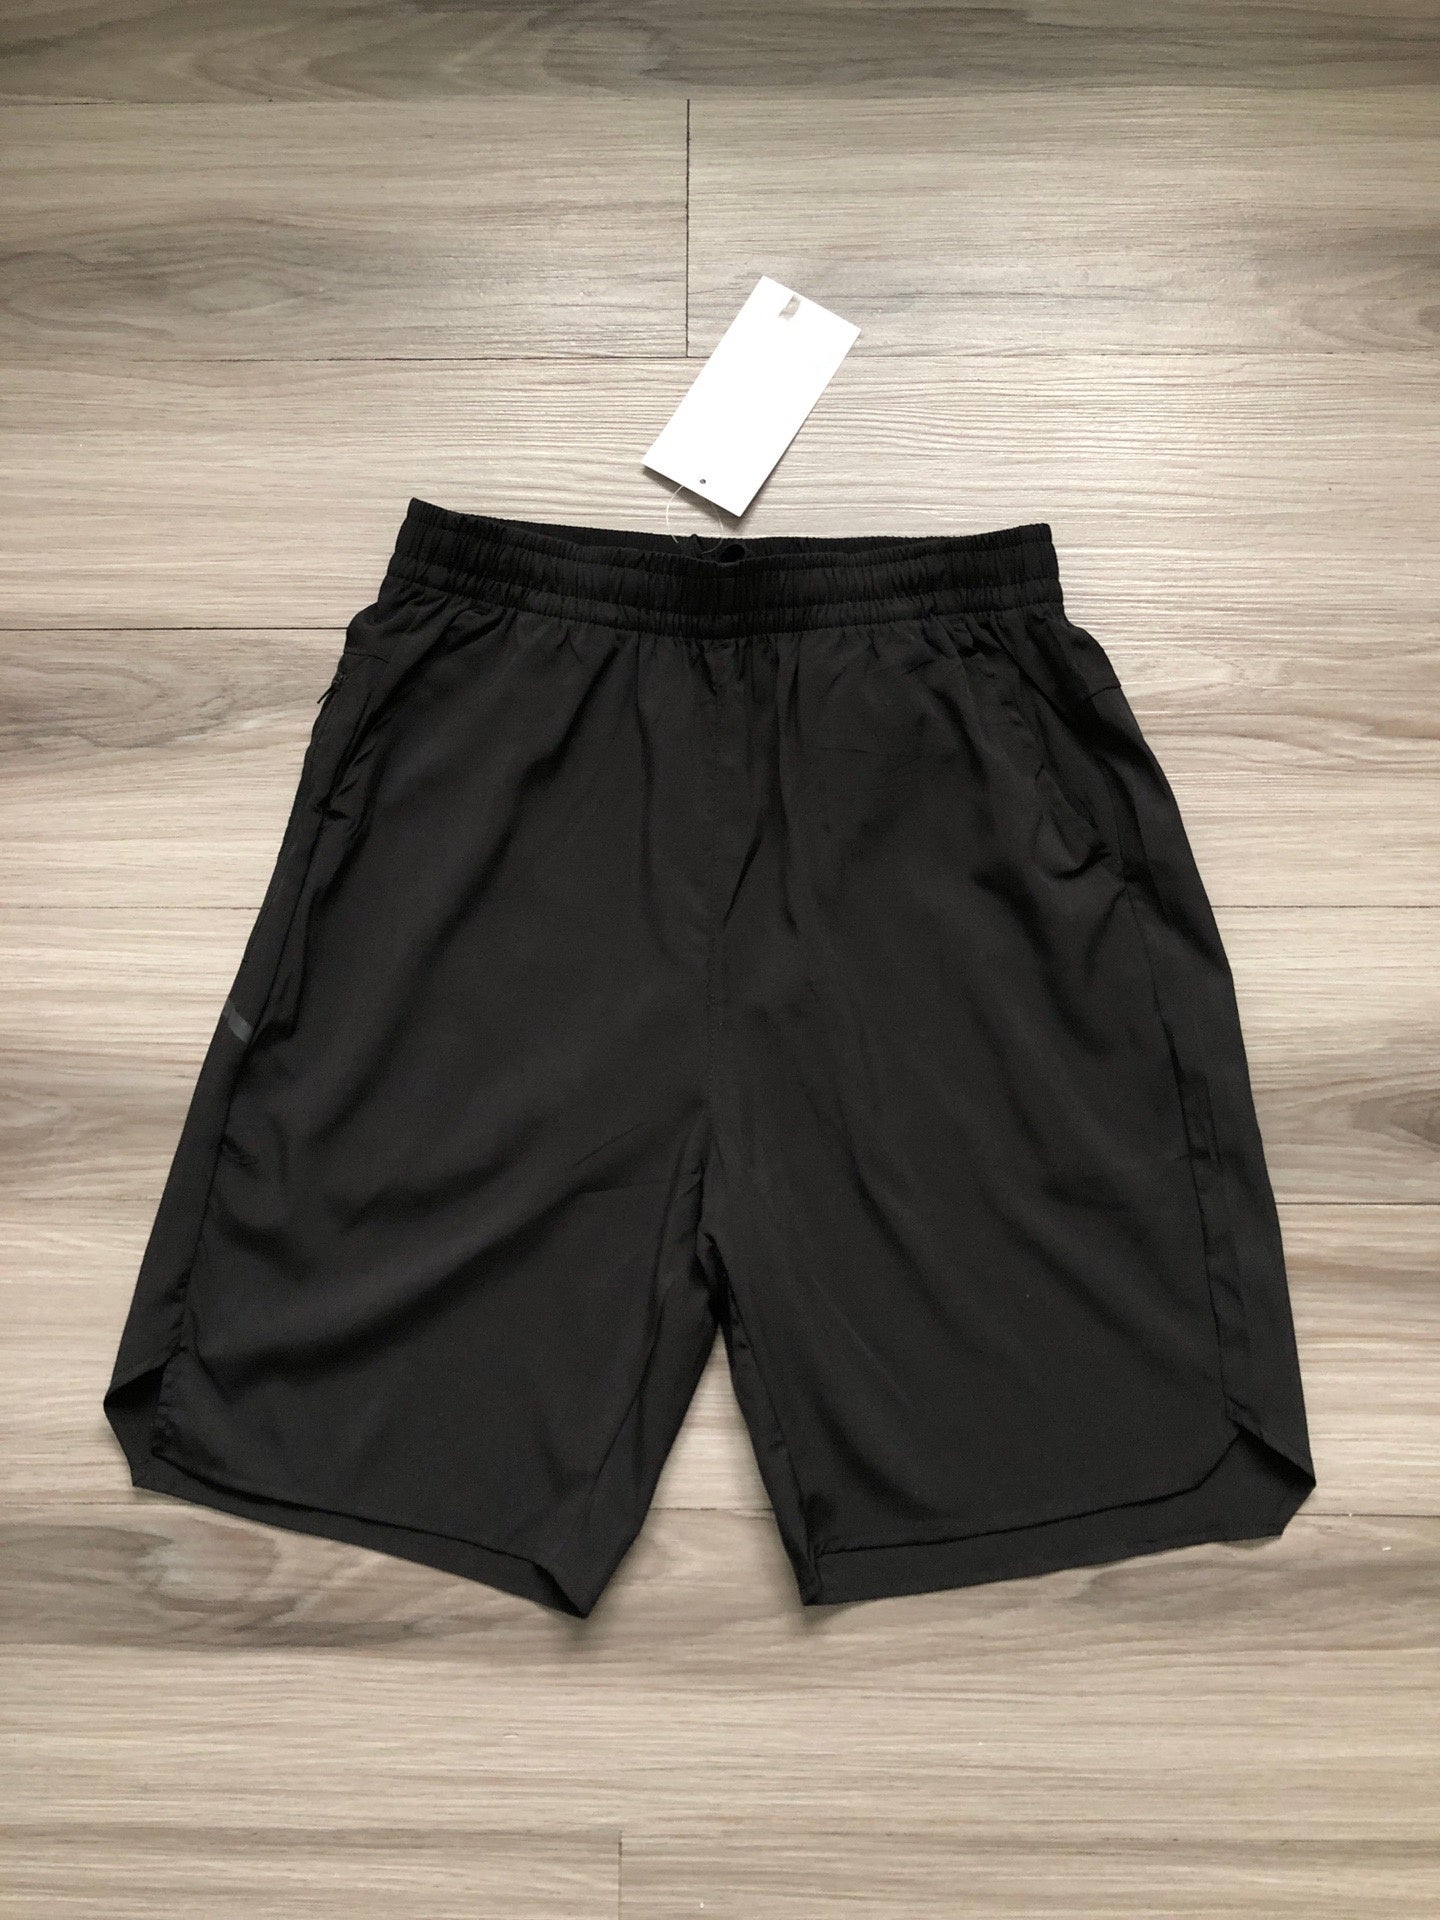 L2508# Men Sport Shorts